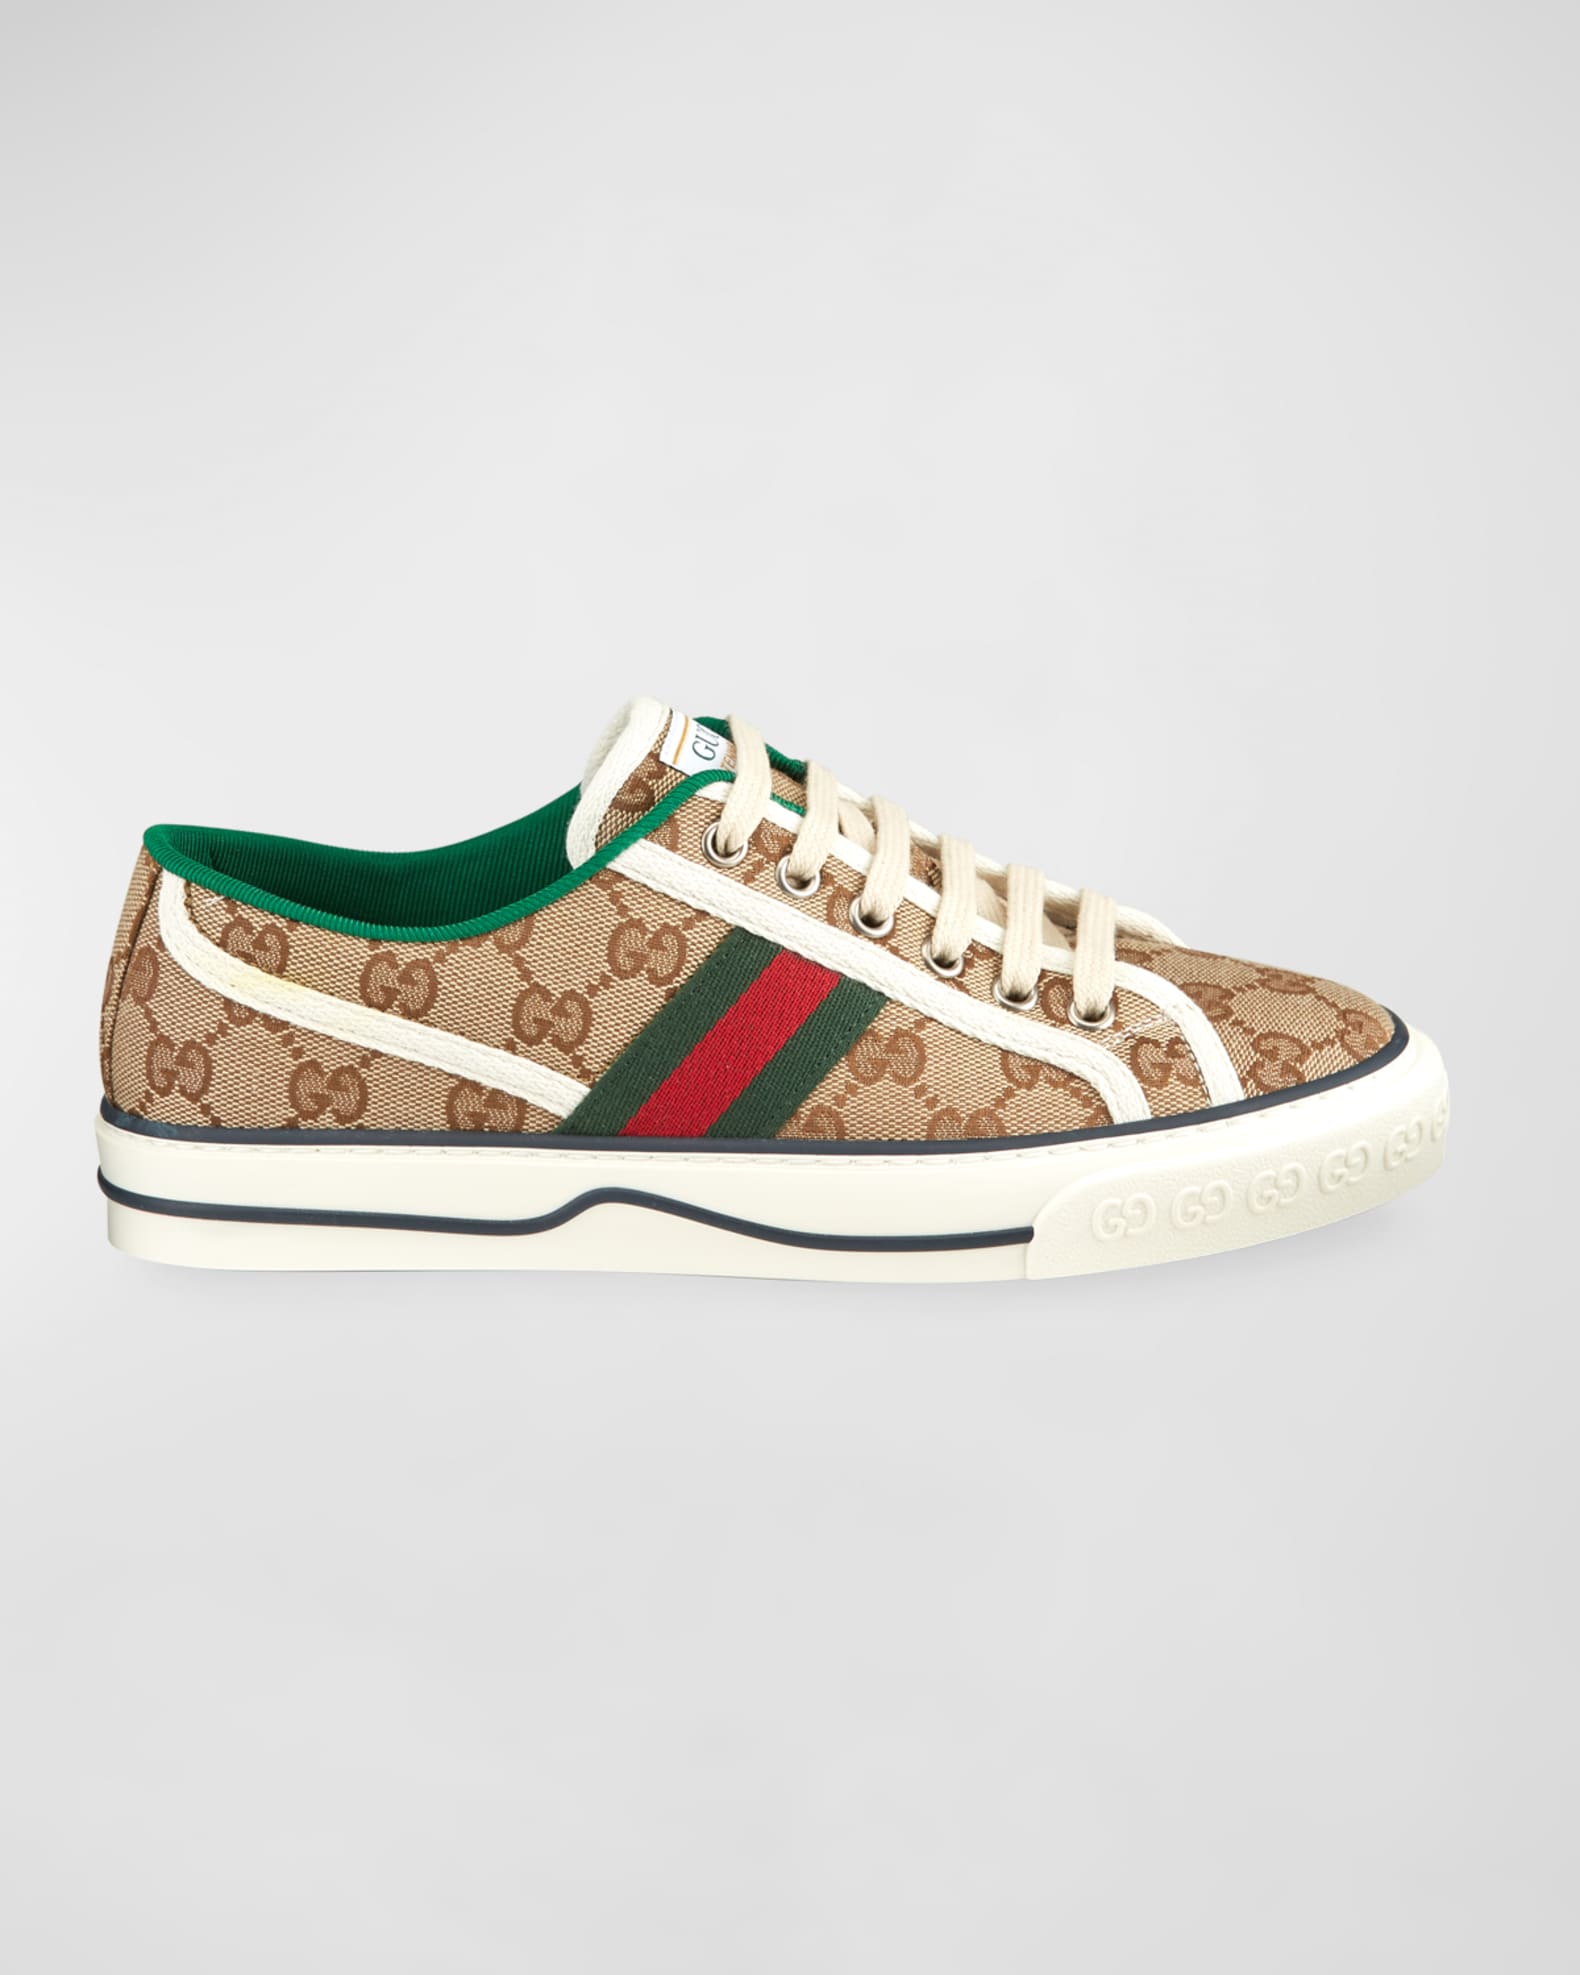 Gucci Multicolor GG Supreme Canvas Tiger Print Slip On Sneakers Size 39  Gucci